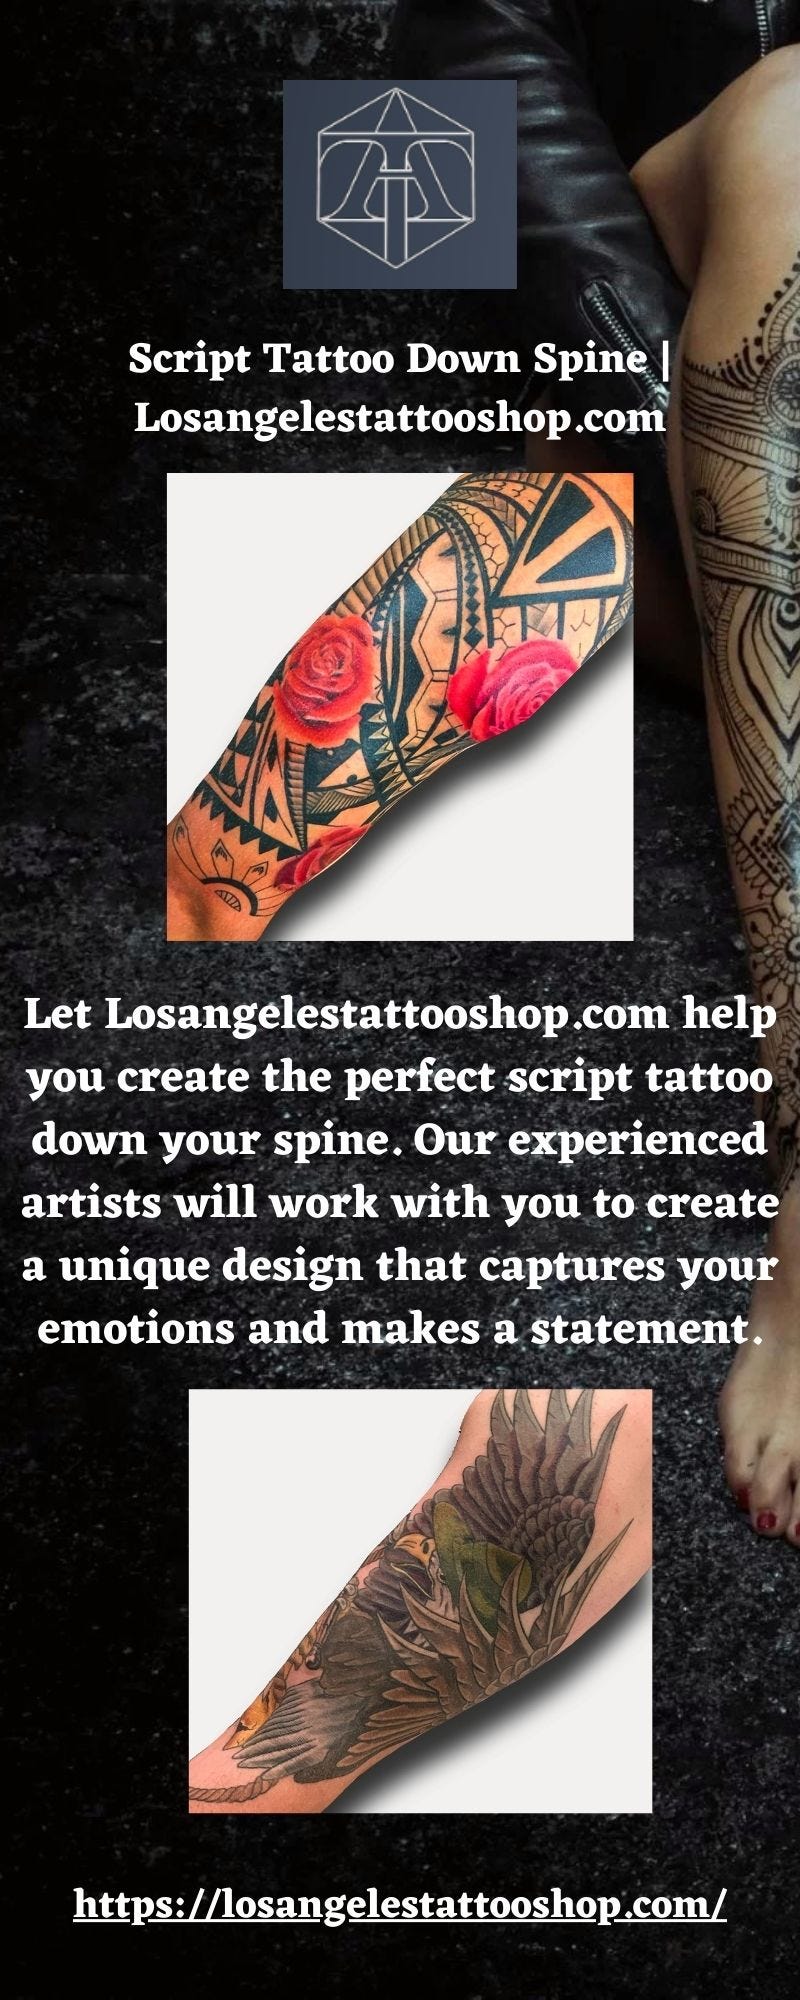 How to Design a Script Tattoo